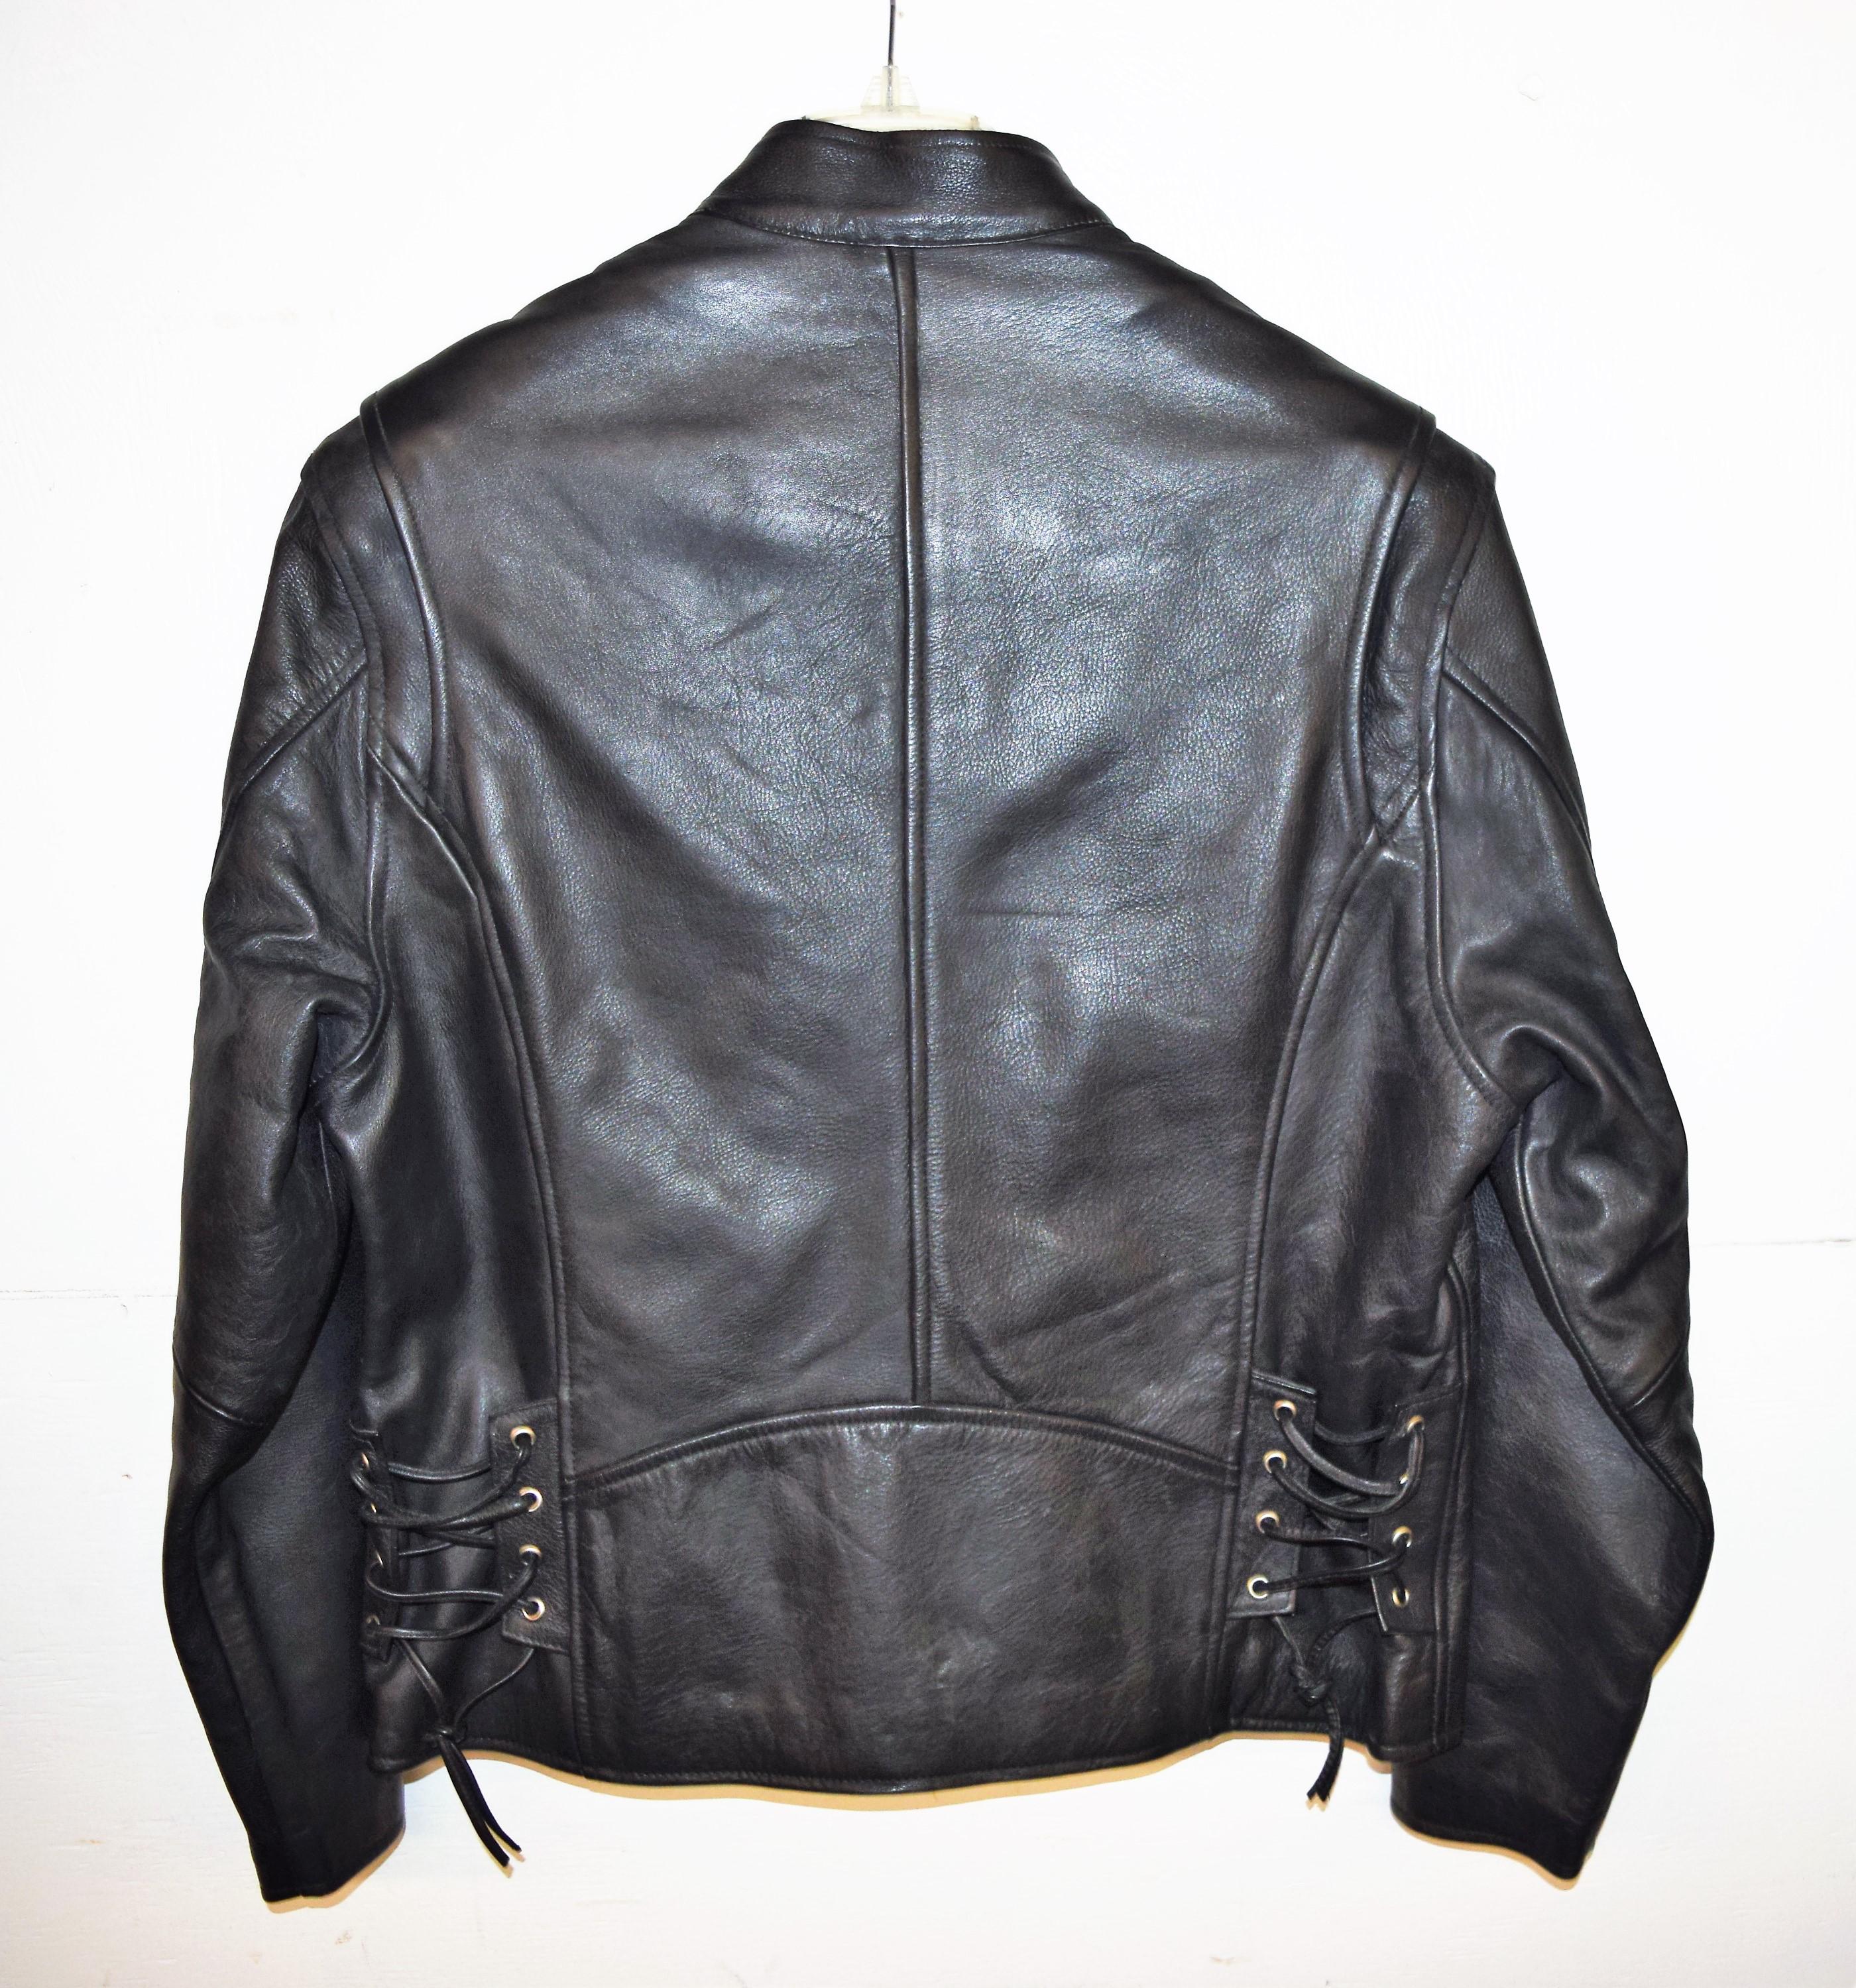 Wilson's "Open Road" Women's Lg. Leather Jacket